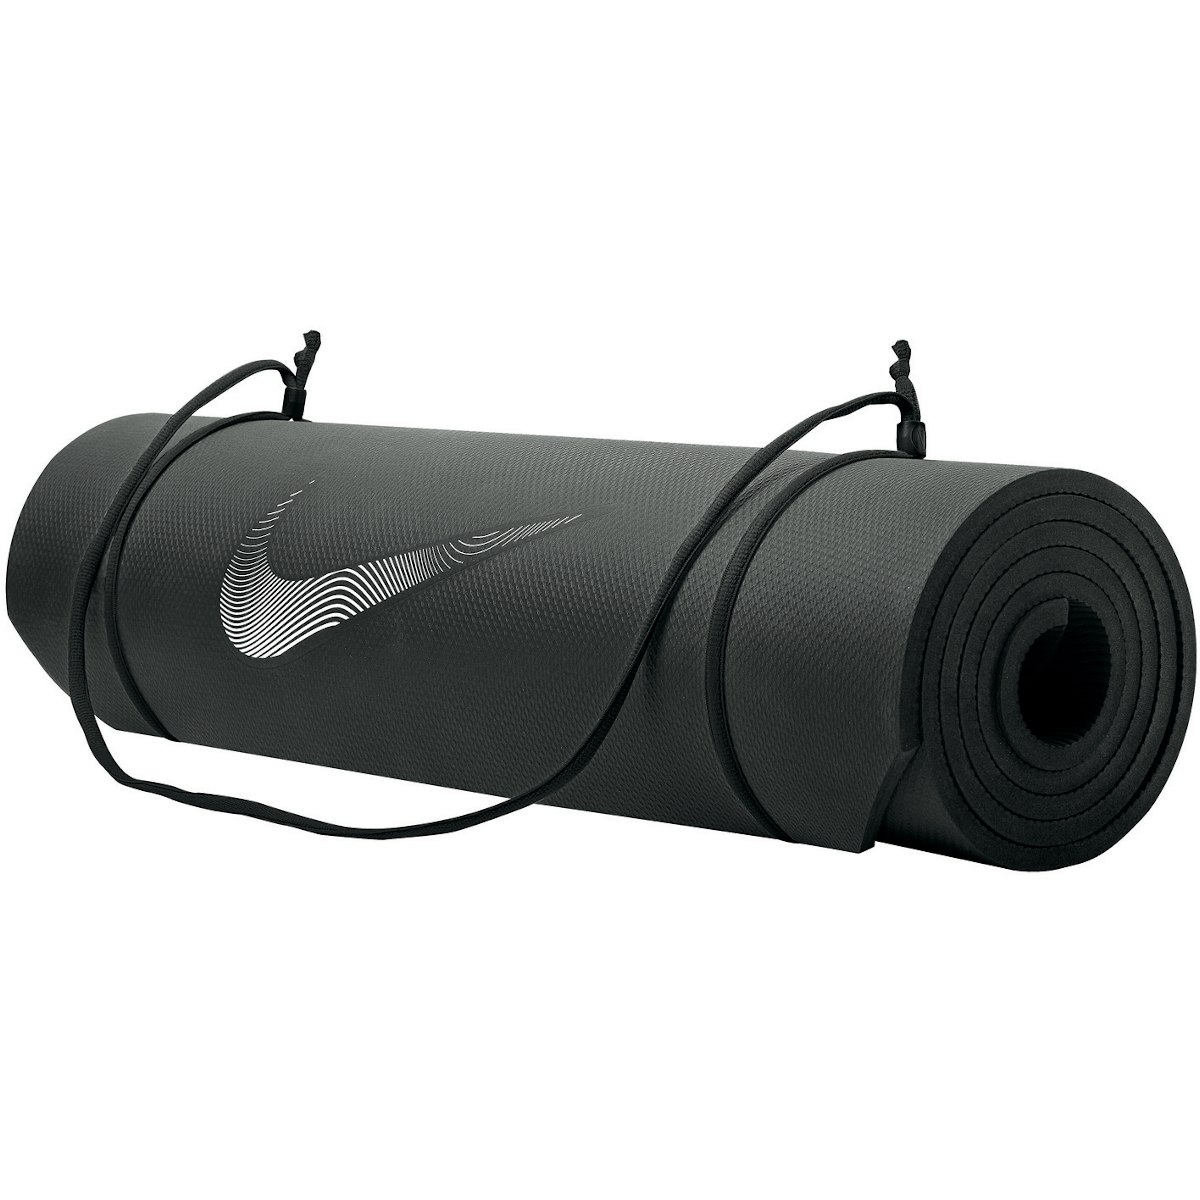 Immagine prodotto da Nike Tappetino Training 2.0 - nero/bianco 010